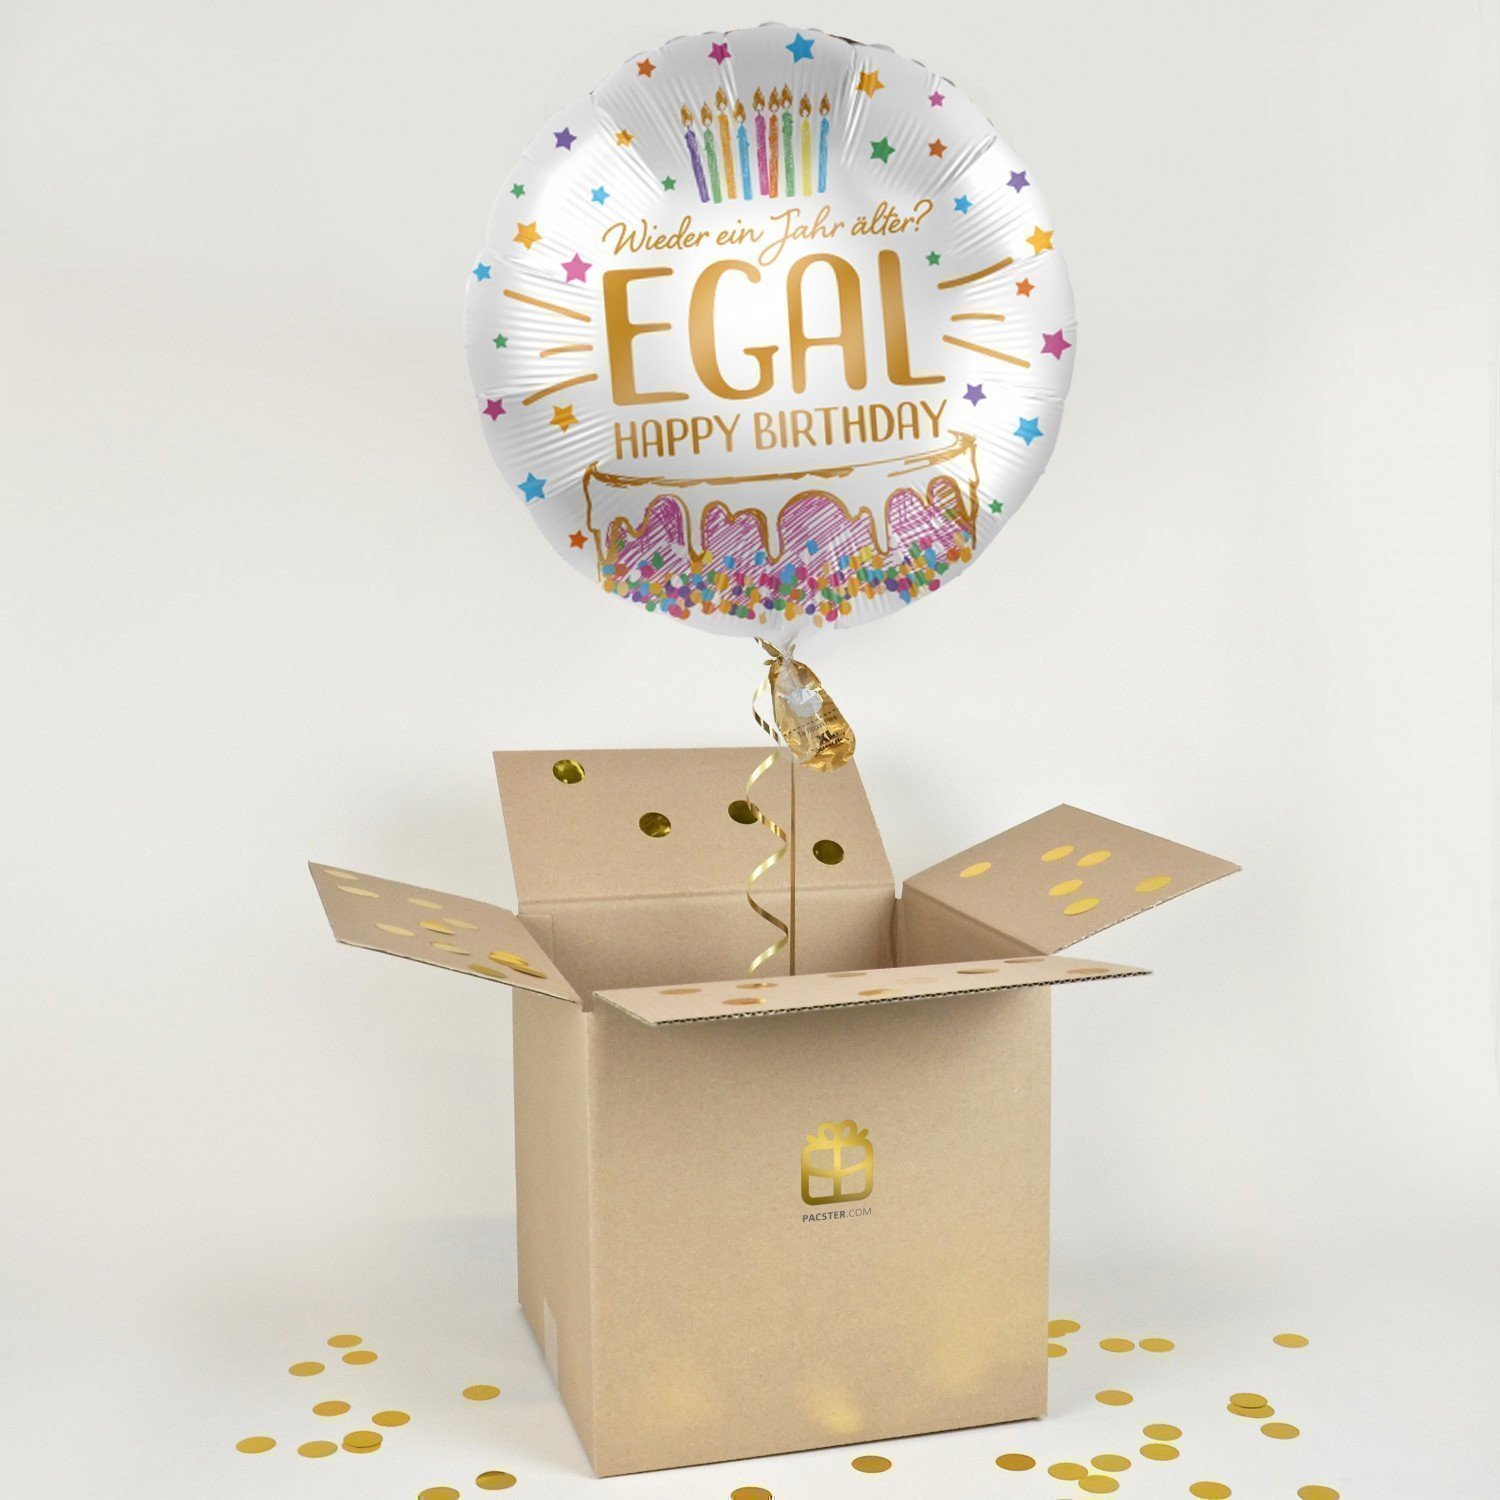 Happy Birthday! - wieder ein Jahr älter - Balloon